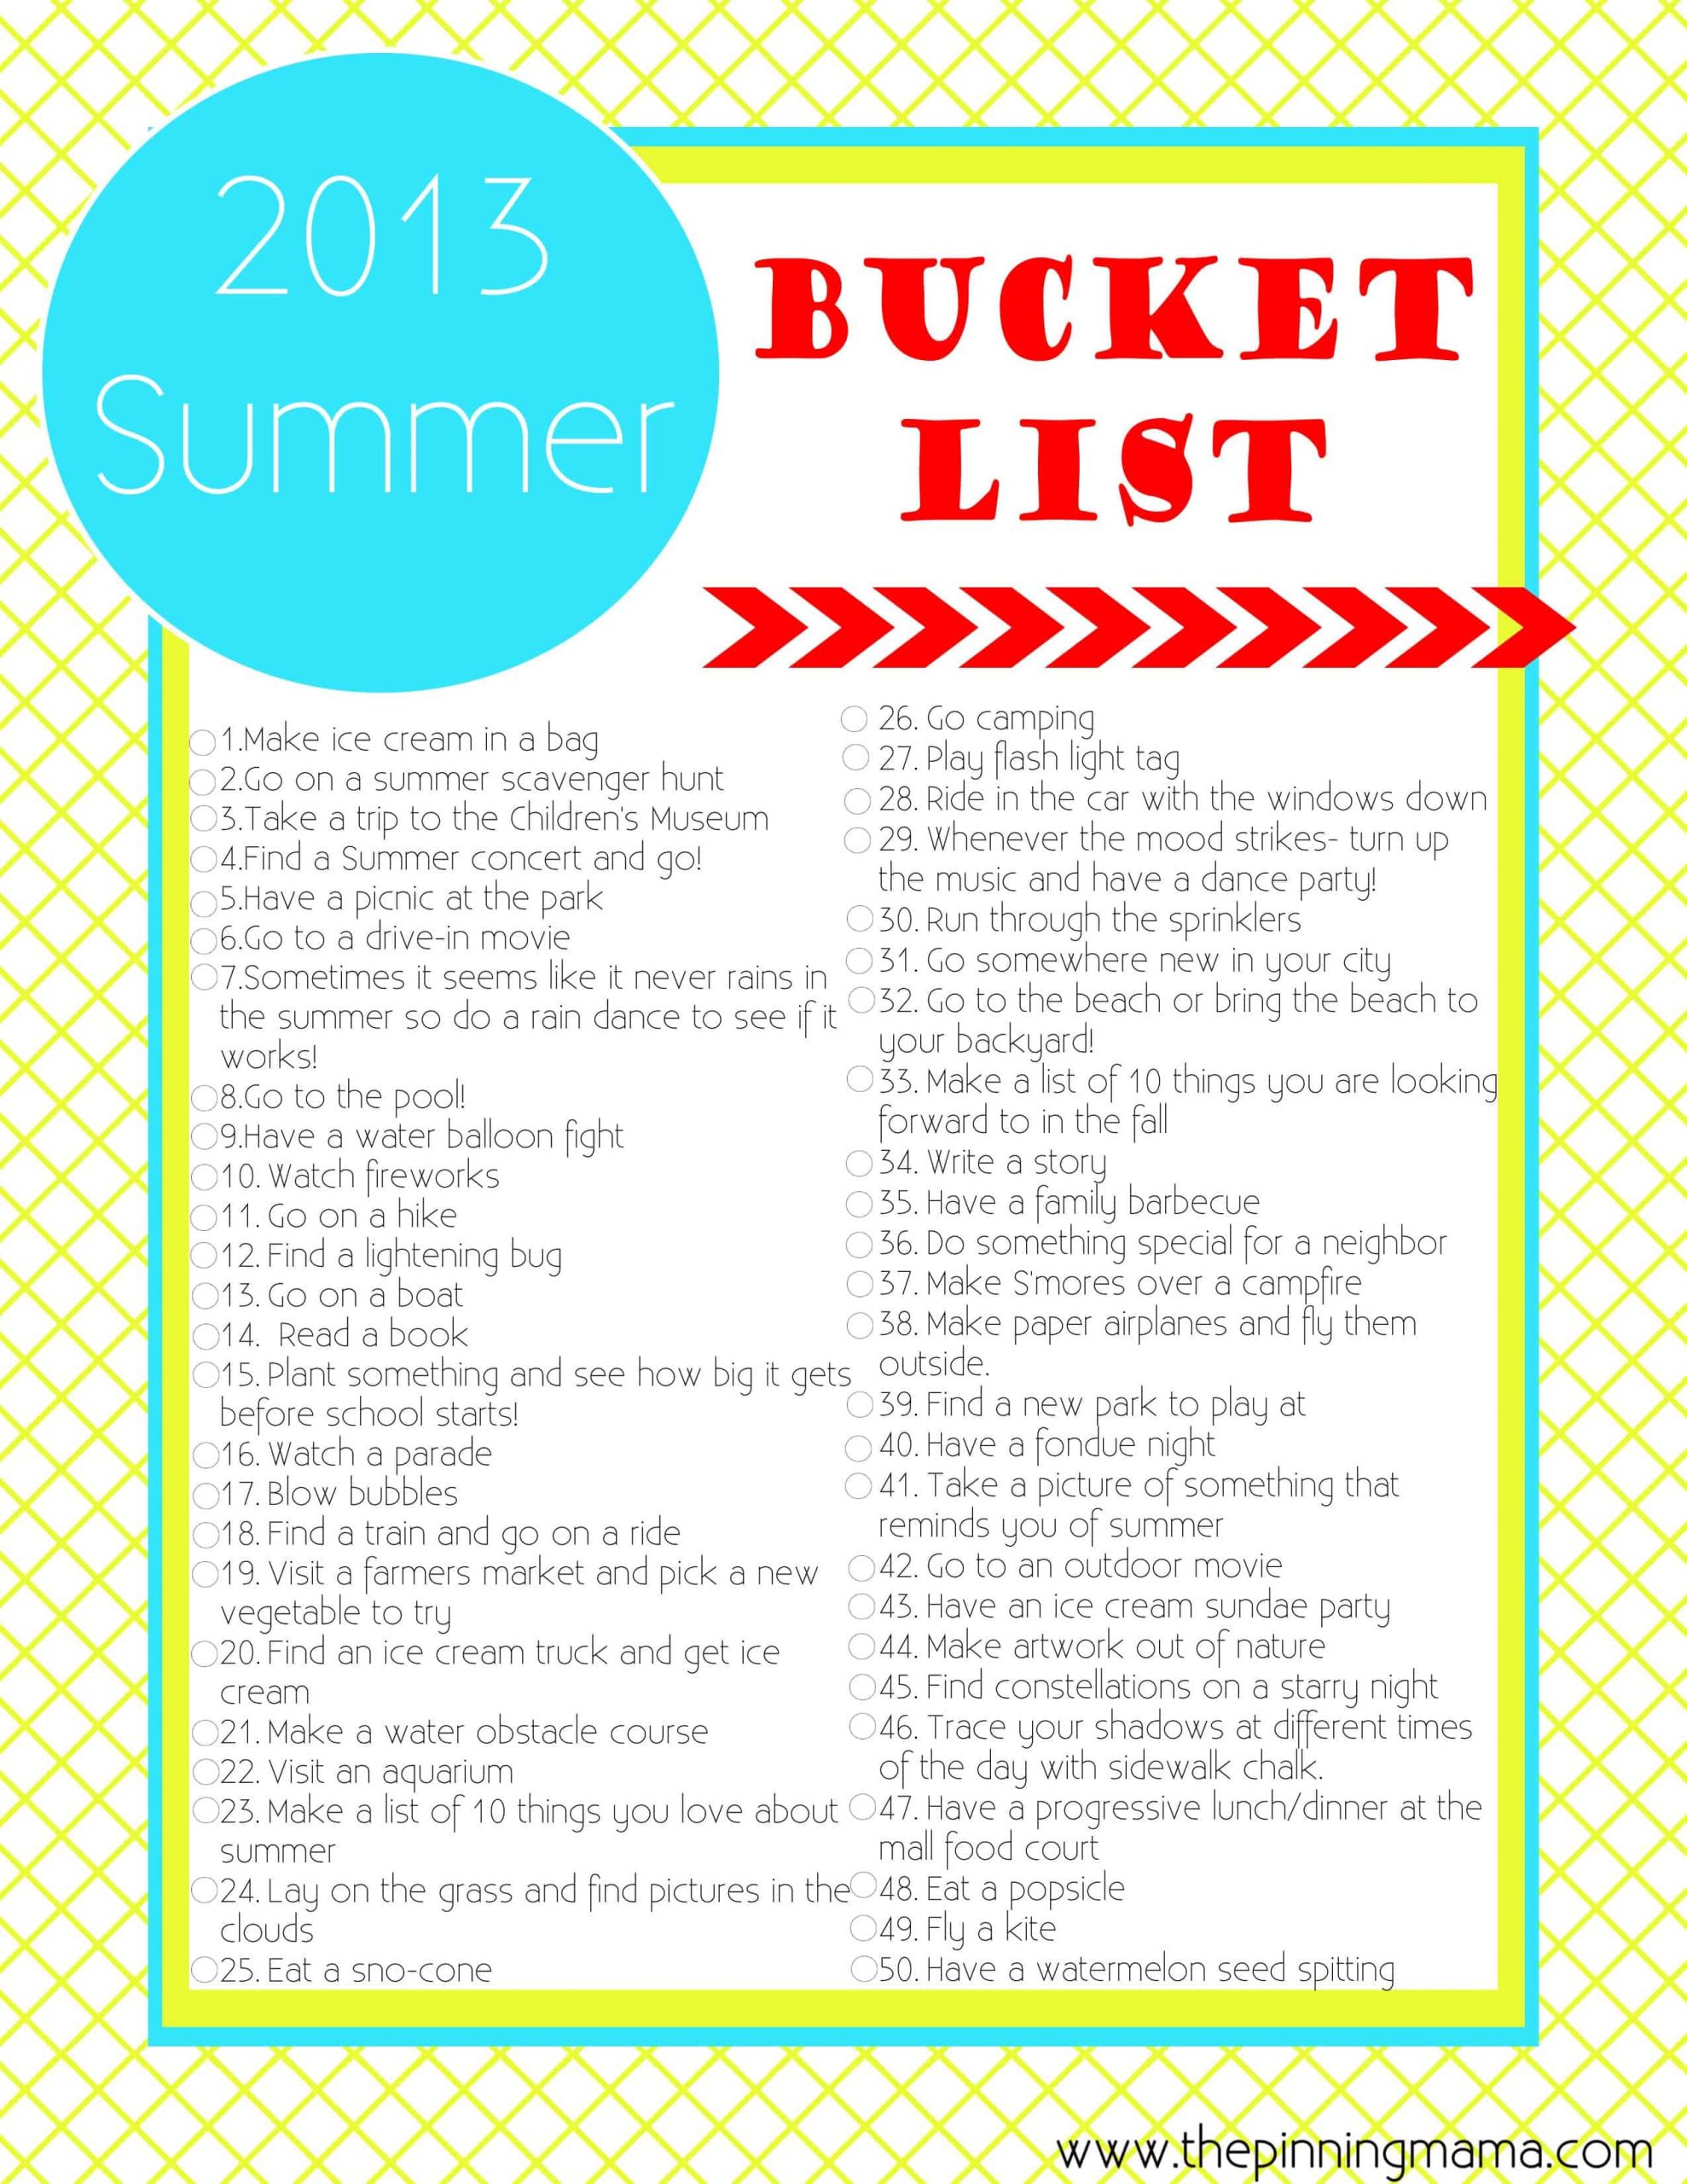 Summer Fun Ideas For Families
 2014 Summer Bucket List 50 ideas & Activities for Kids